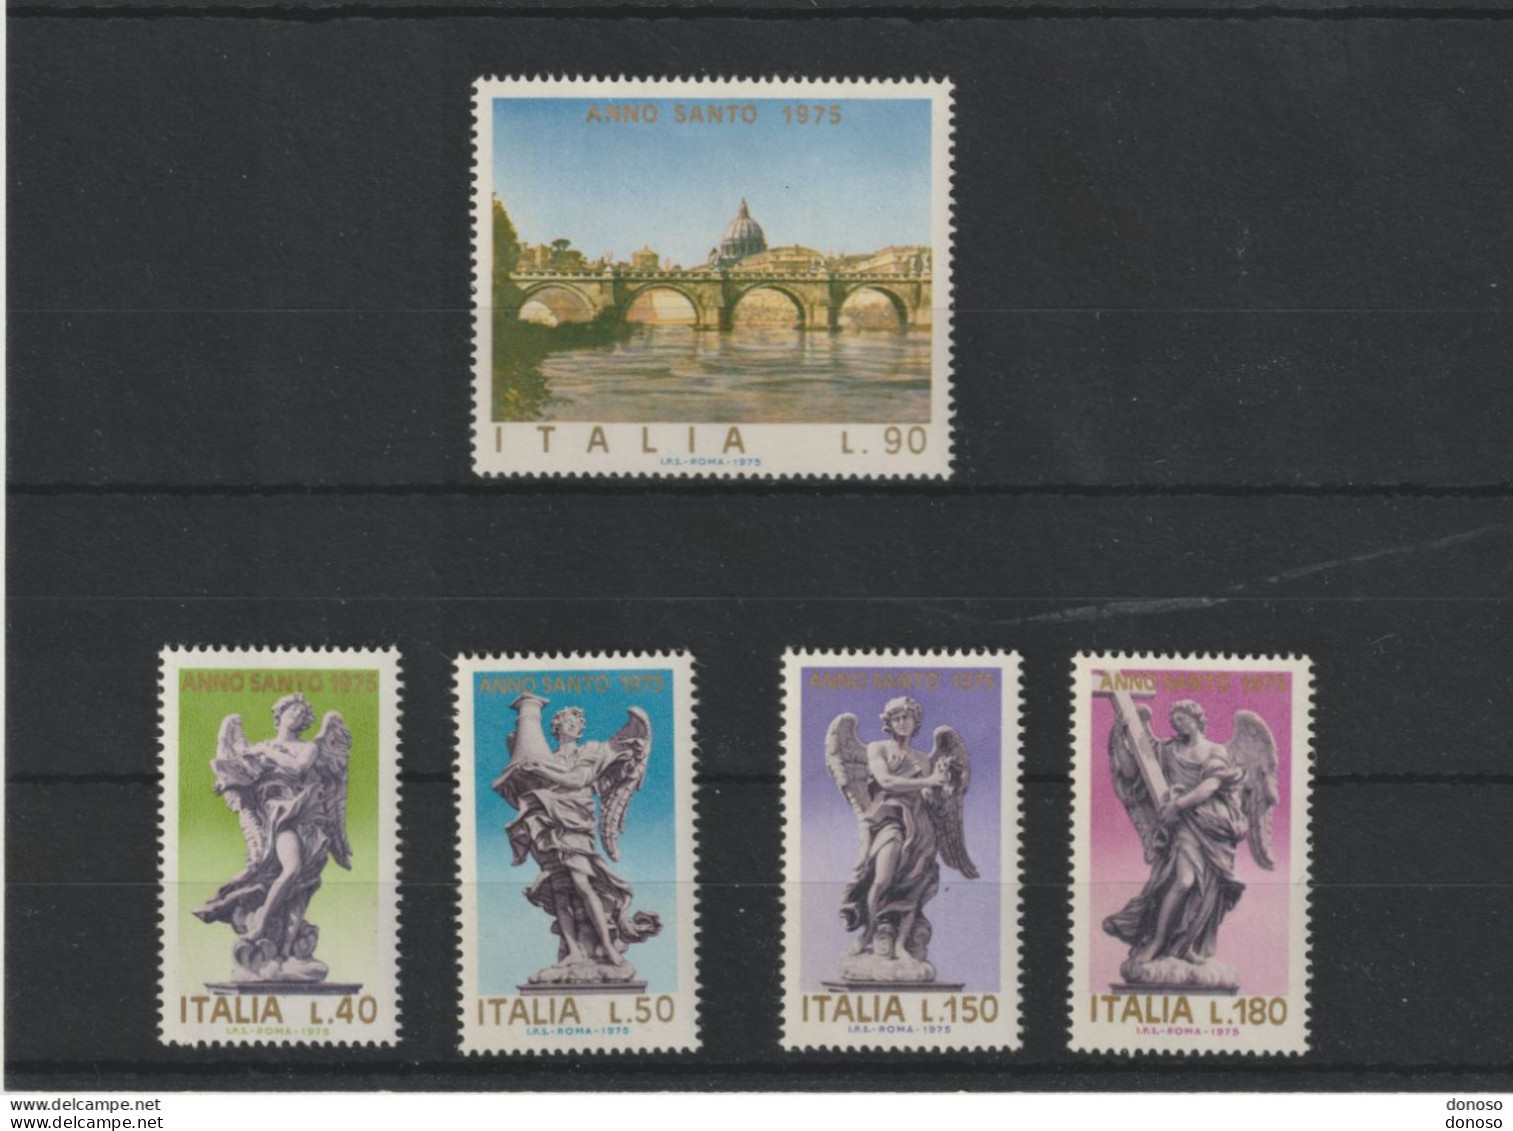 ITALIE 1975 Année Sainte, Pont Saint Ange Et Sculptures D'anges Yvert 1211-1215, Michel 1478-1482 NEUF** MNH - 1971-80:  Nuevos